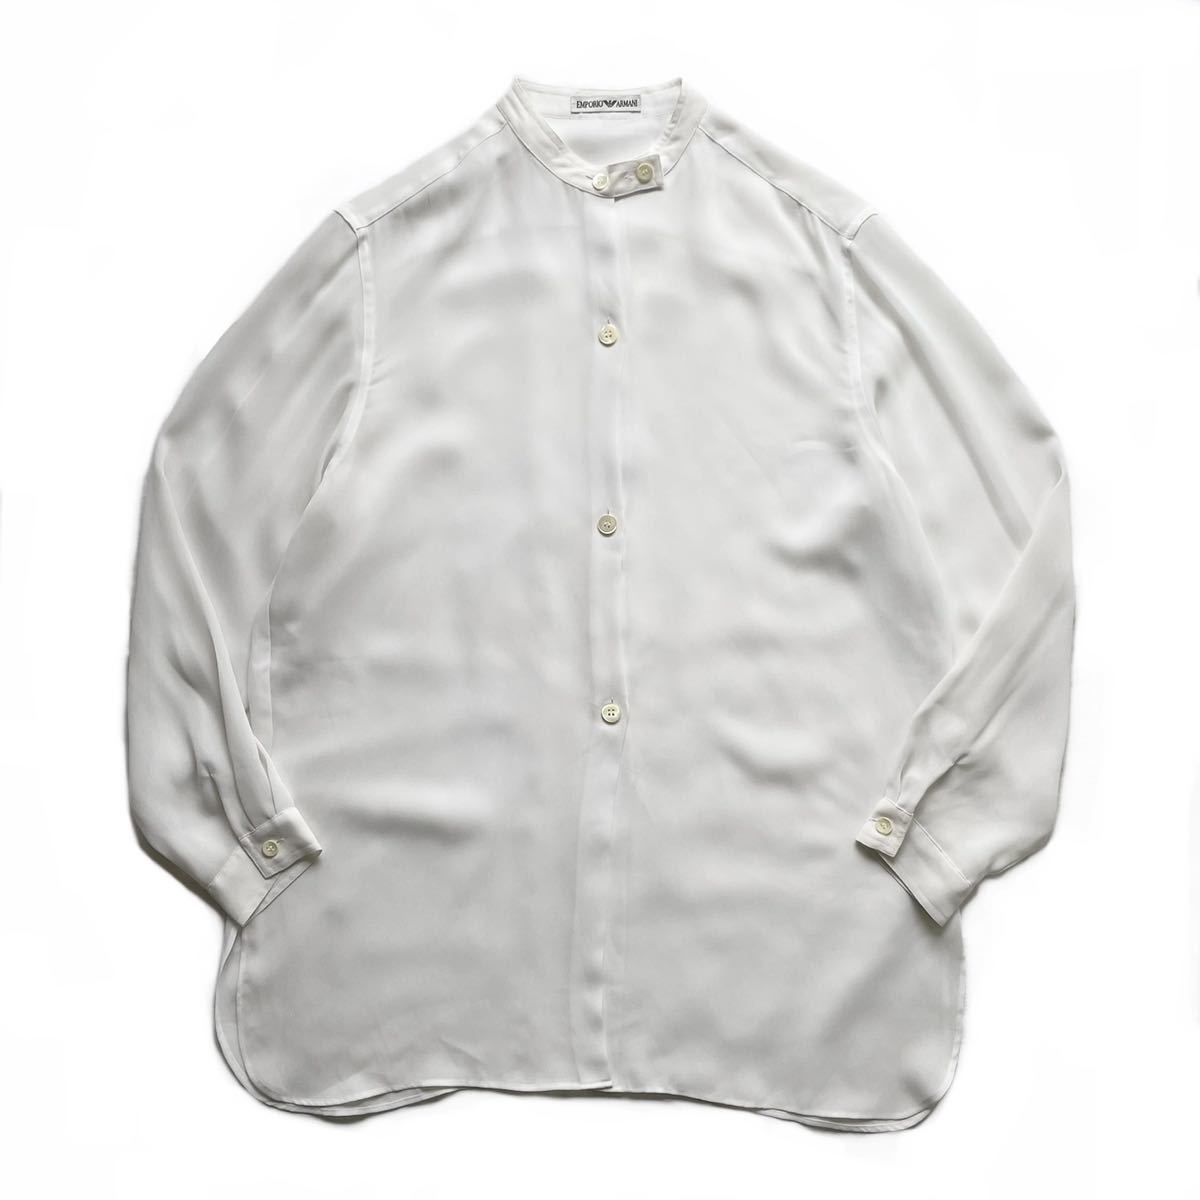 希少 80s90s EMPORIO ARMANI エンポリオアルマーニ ノーカラーシャツ シースルーシャツジャケット ホワイト 白 古着 ビンテージ 